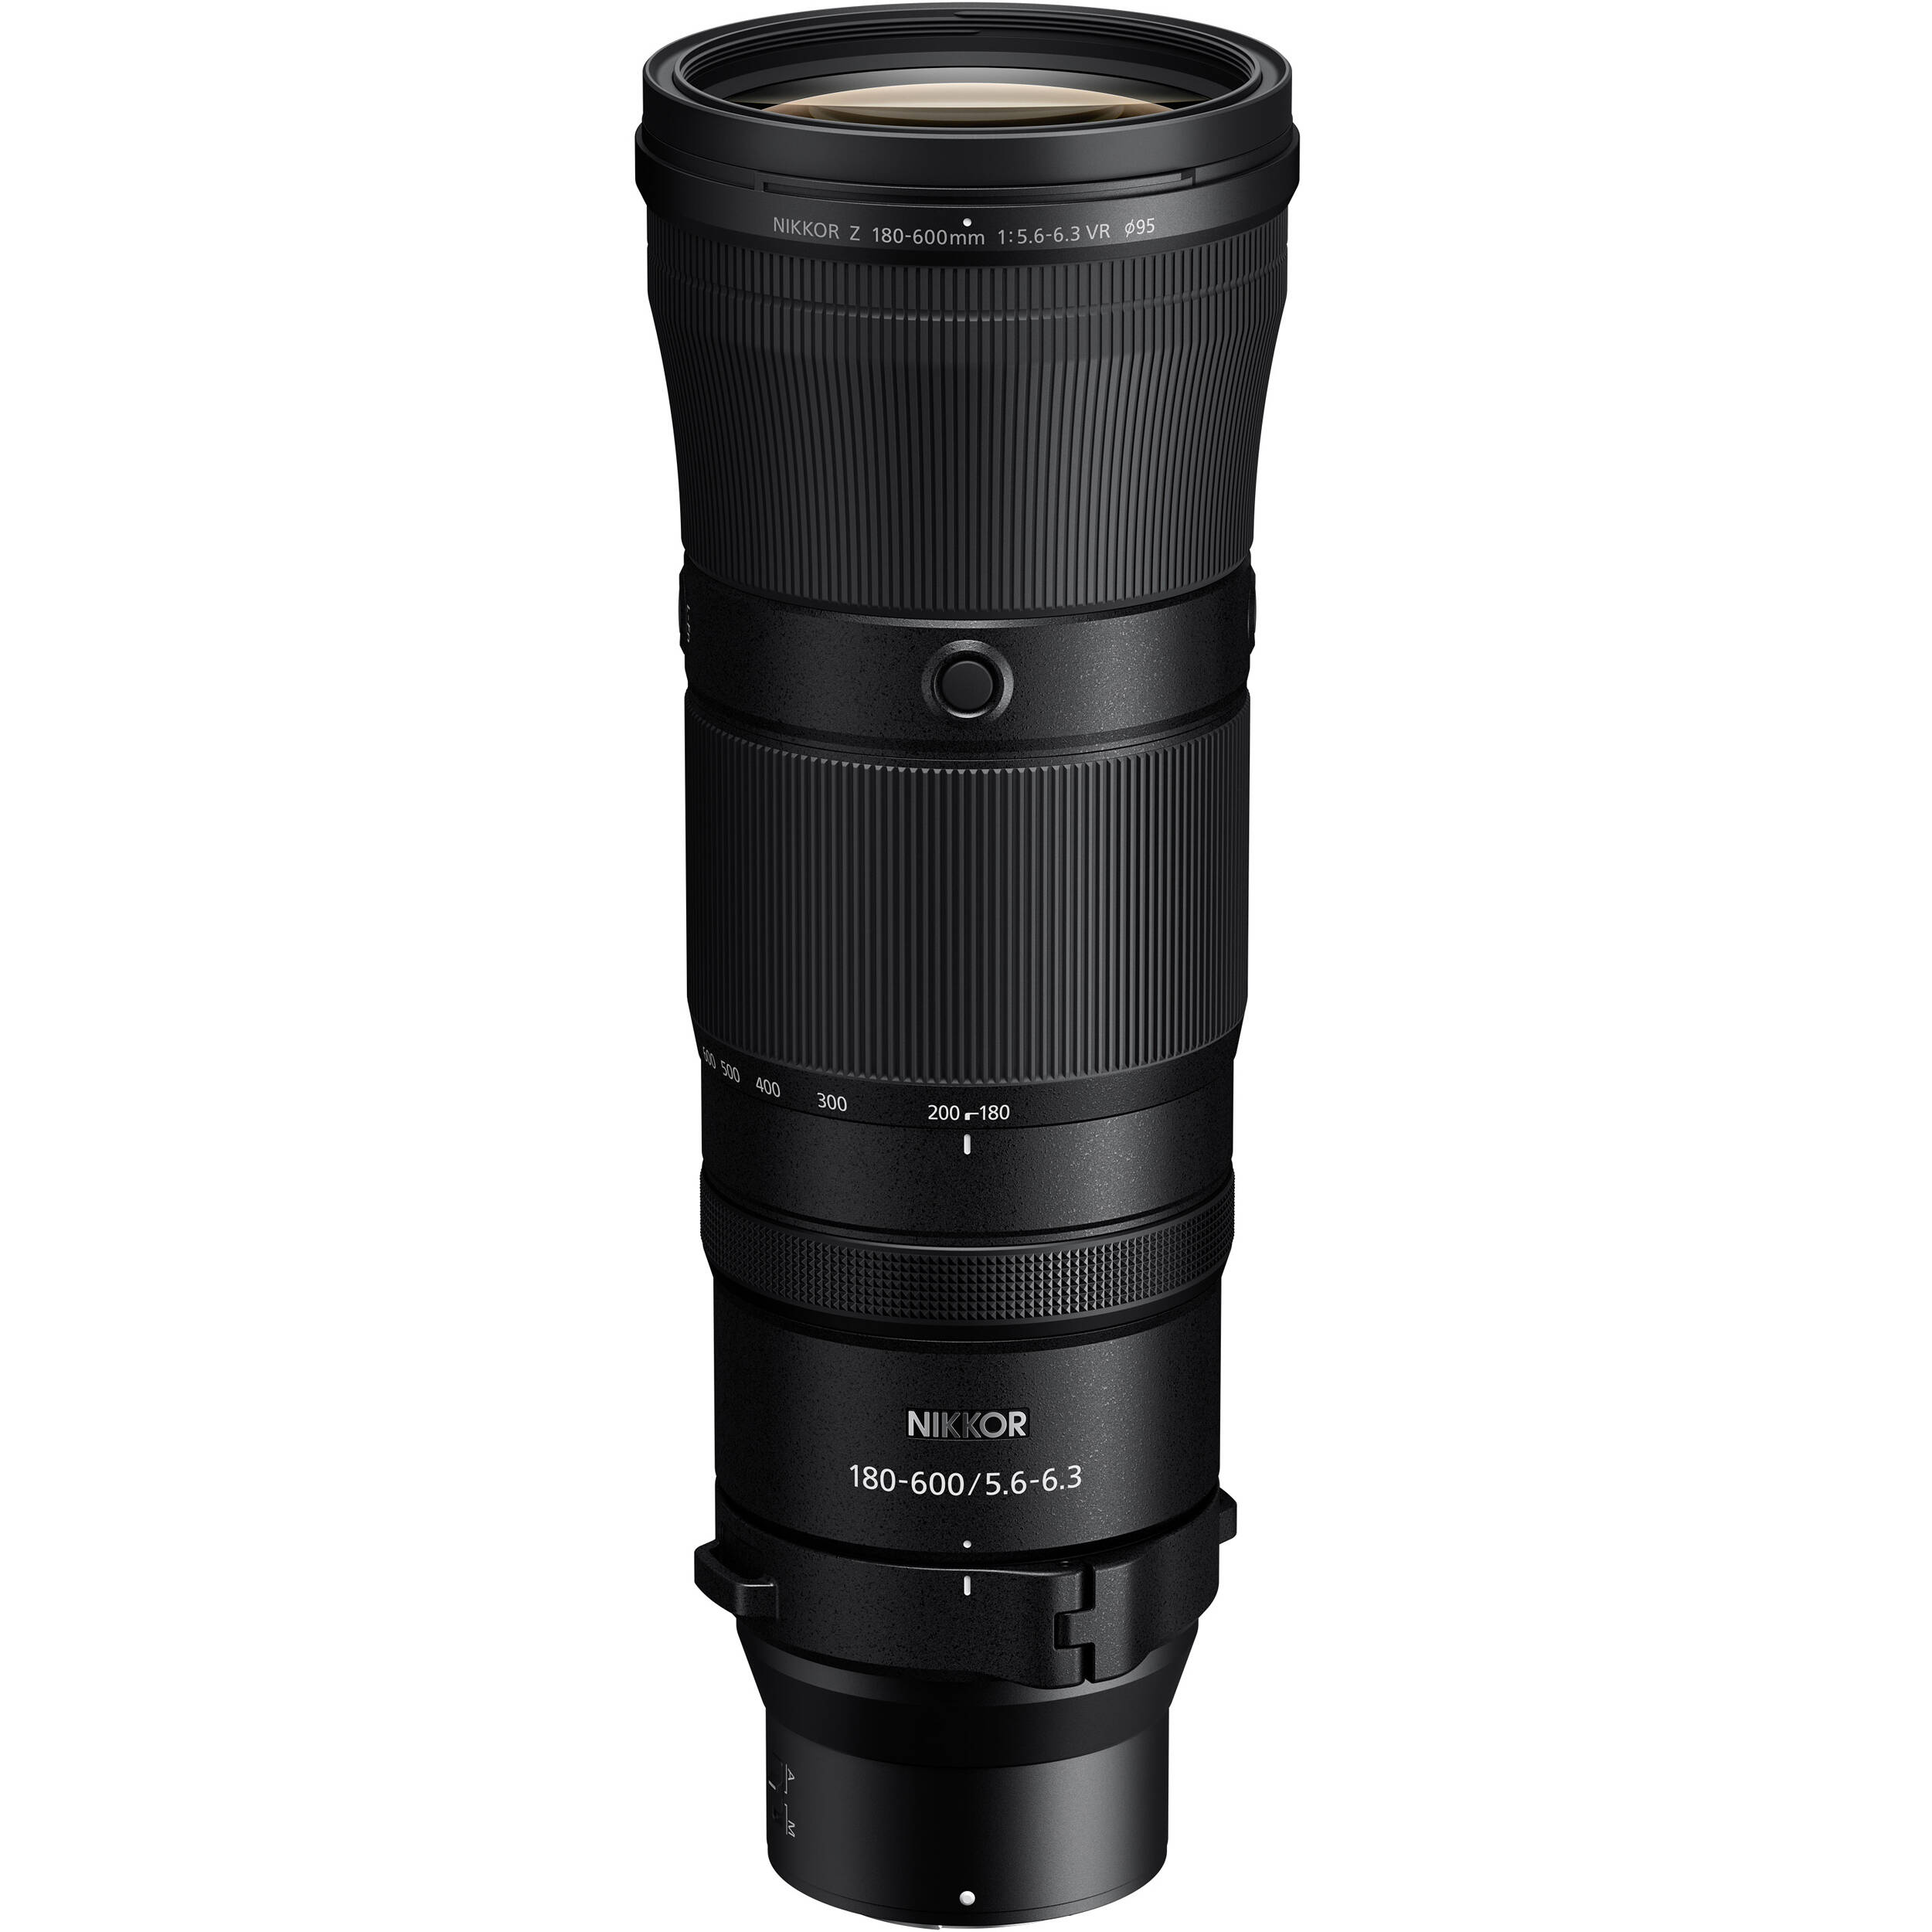 Nikon Nikkor Z 180-600 mm f / 5.6-6.3 VR Lens (Nikon Z Mount)